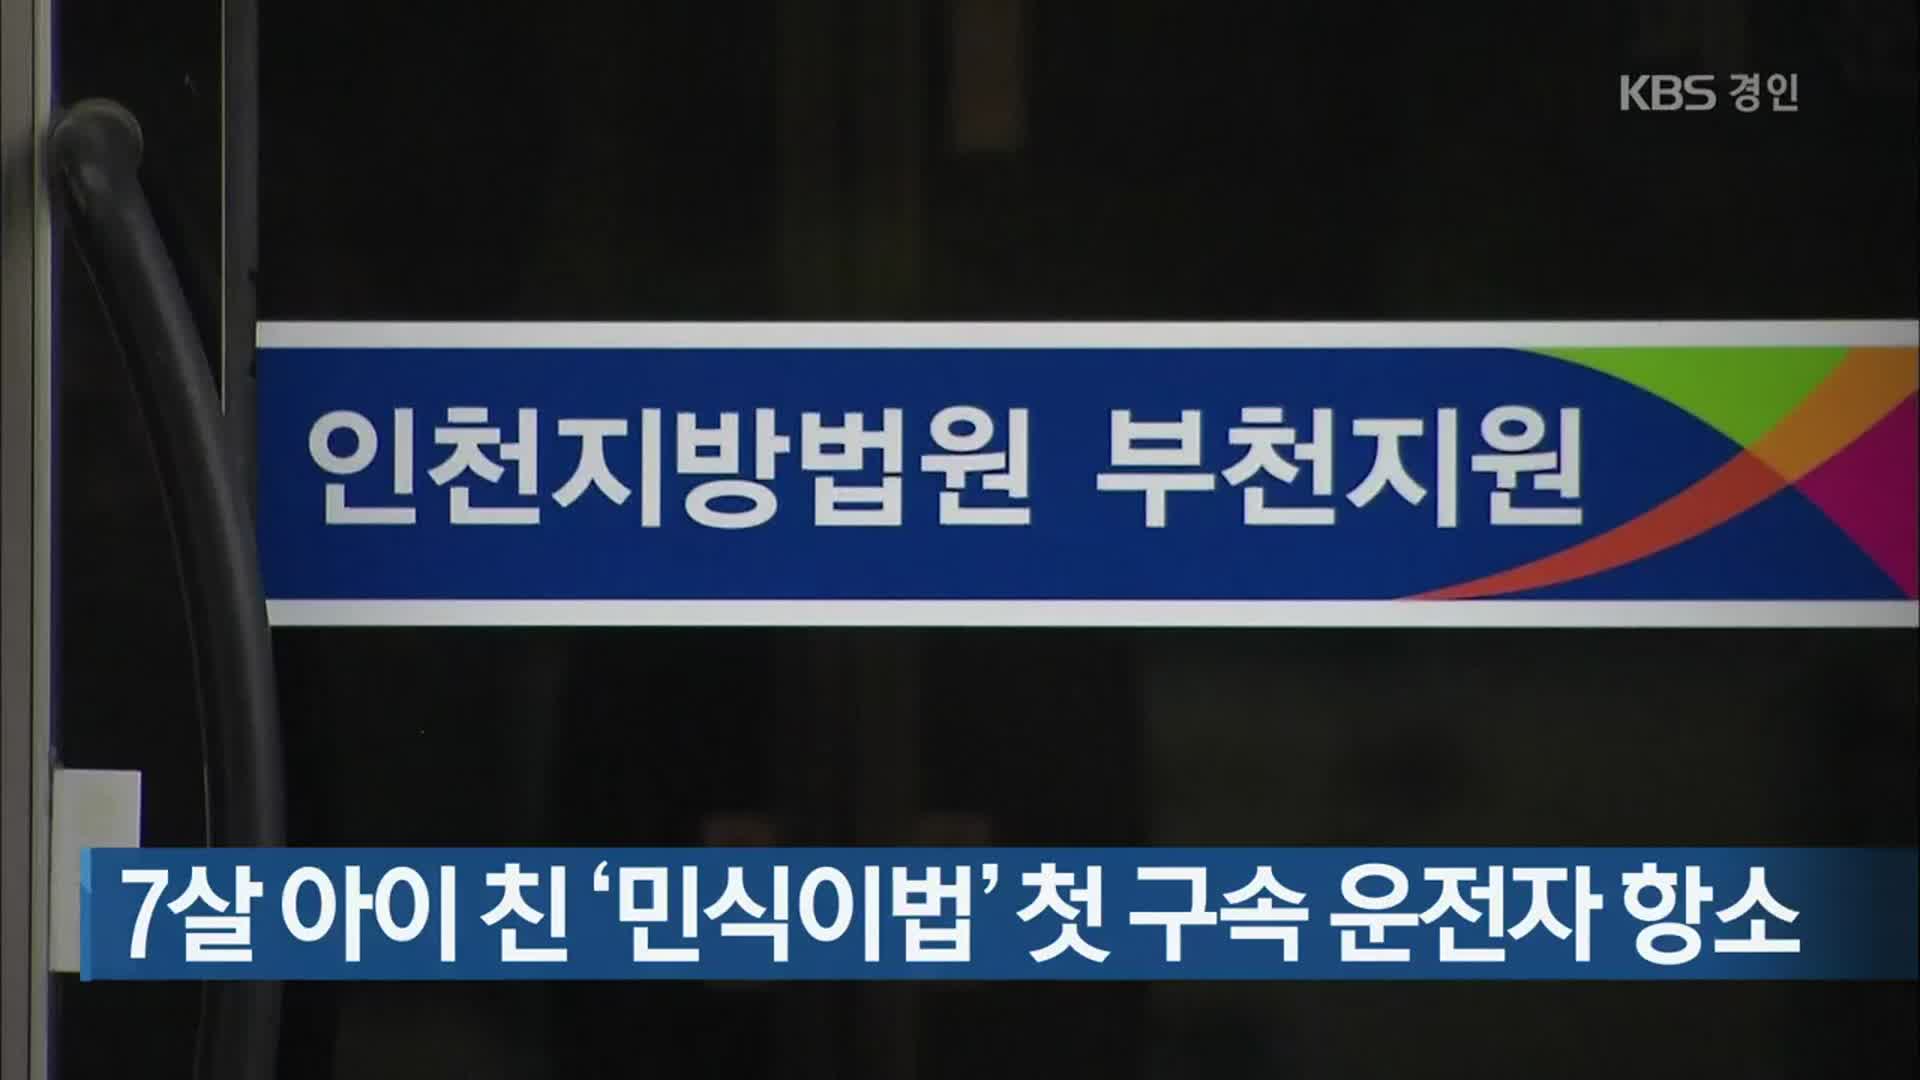 7살 아이 친 ‘민식이법’ 첫 구속 운전자 항소